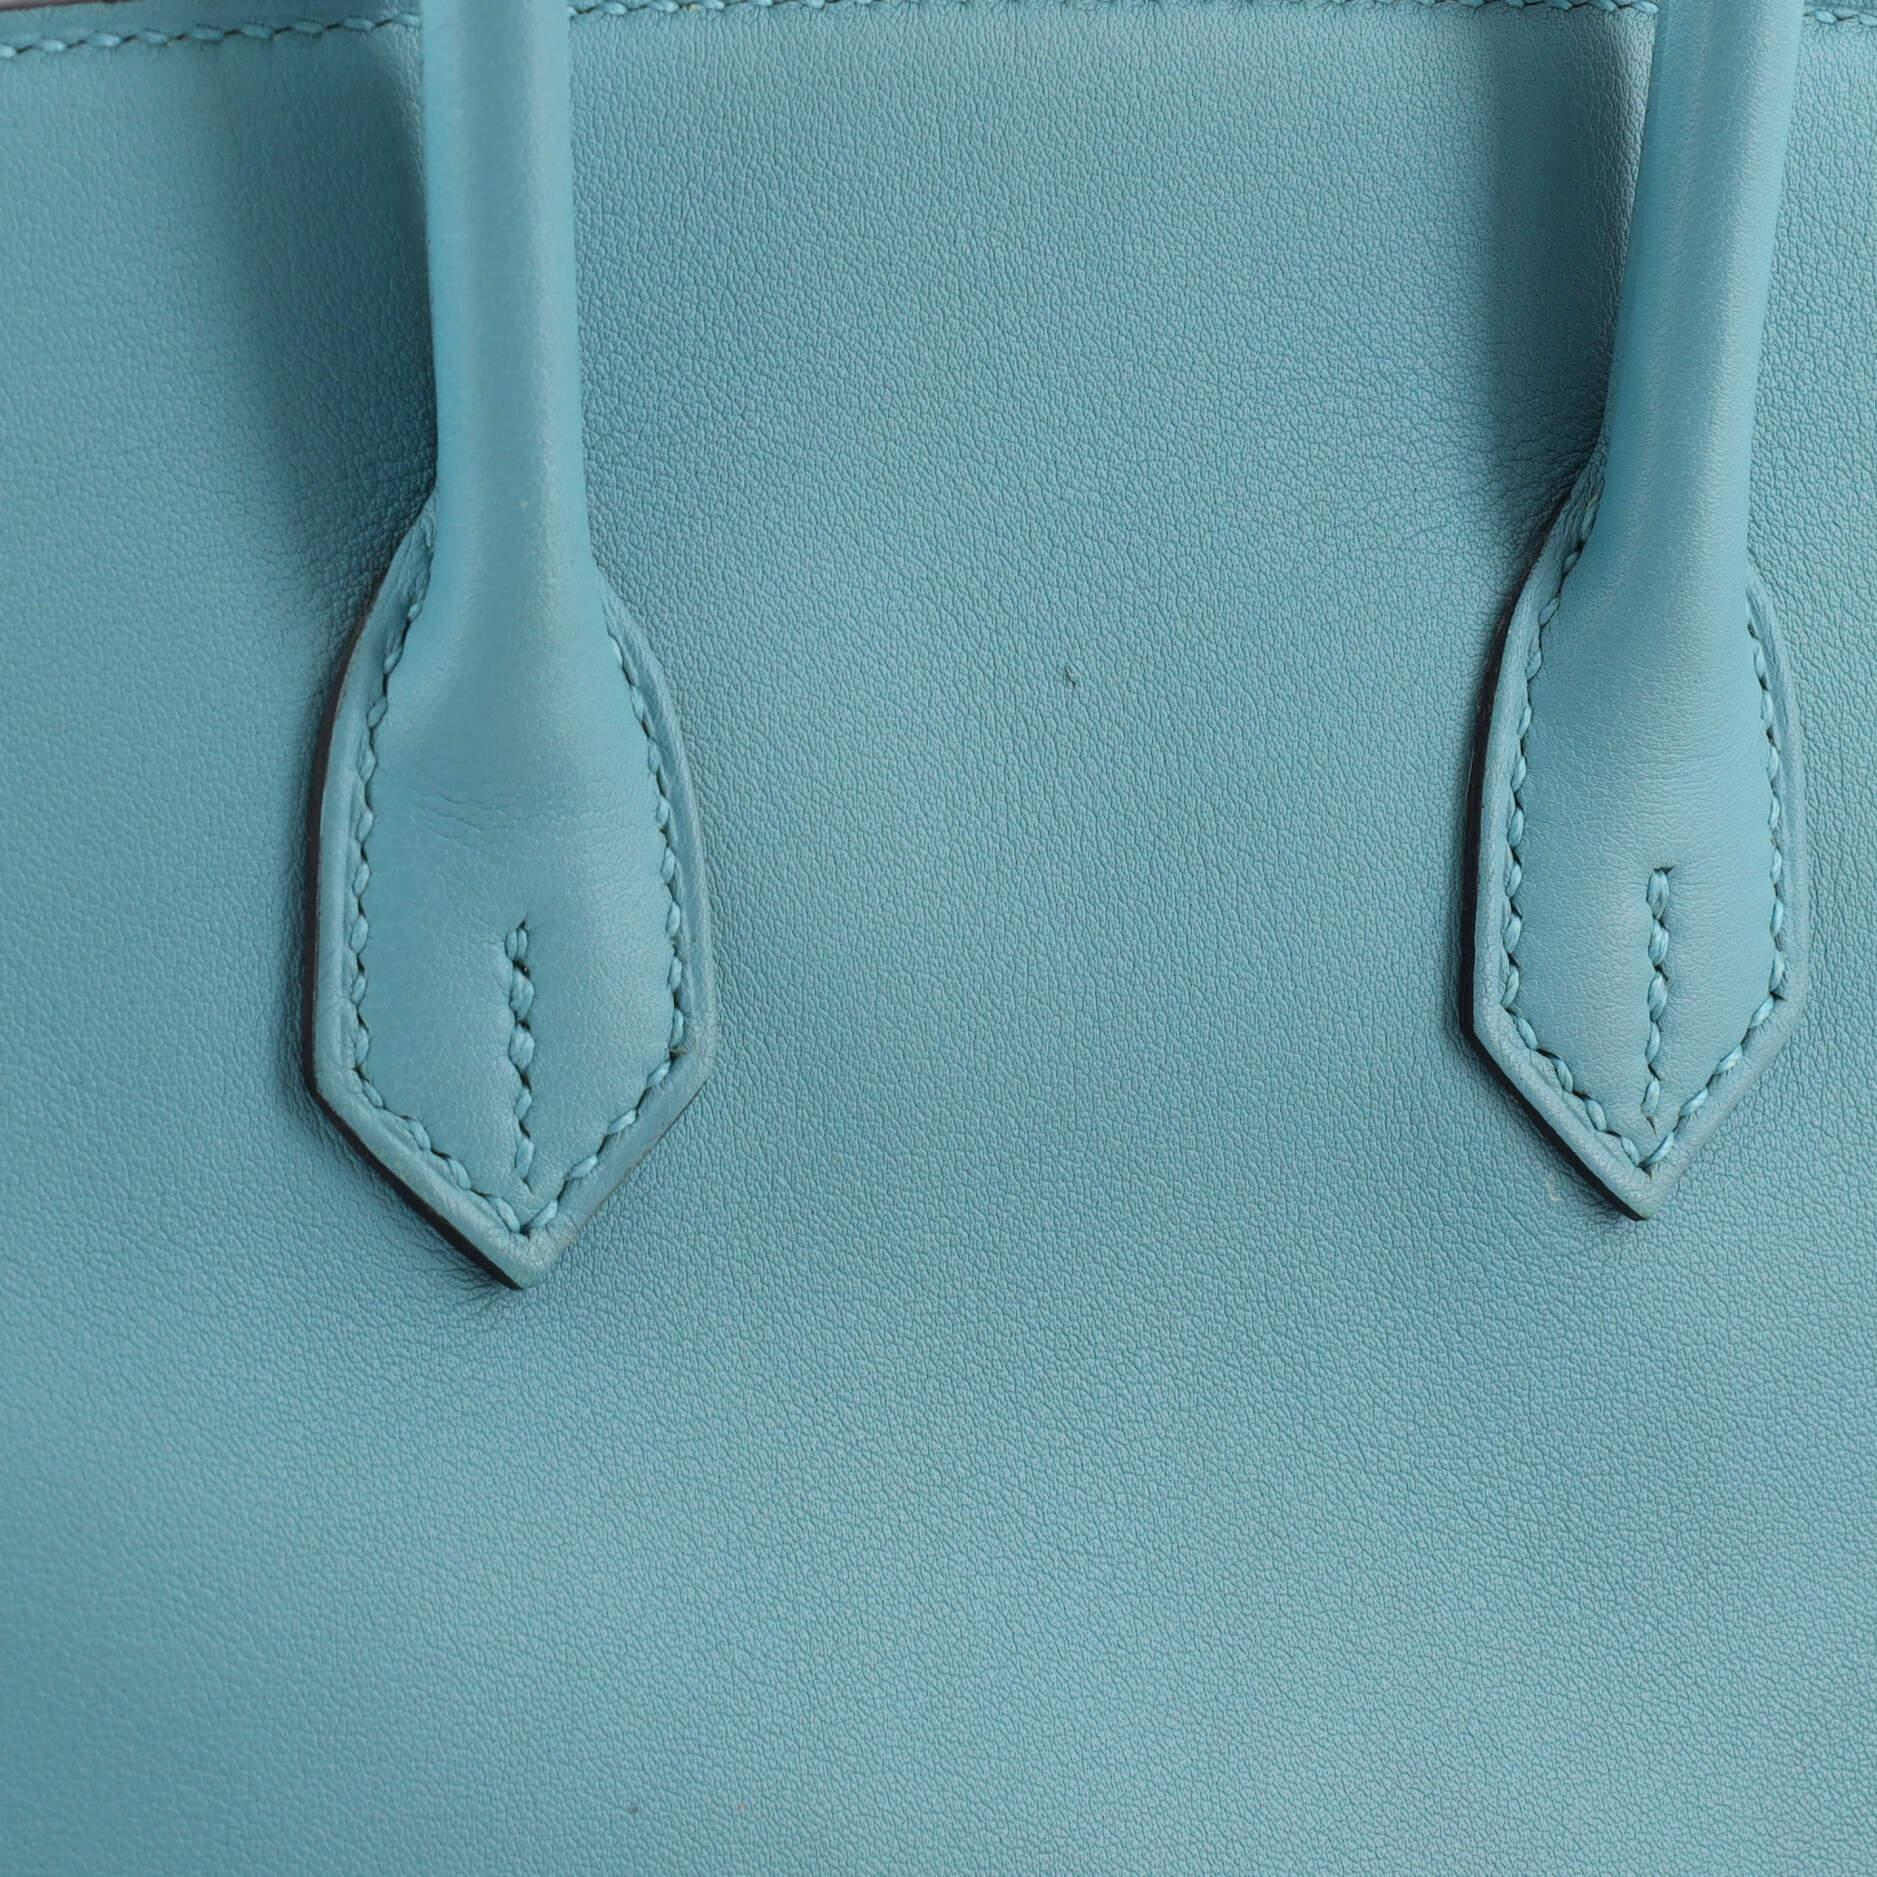 Hermes Birkin Handbag Bleu Atoll Swift with Gold Hardware 25 For Sale 5